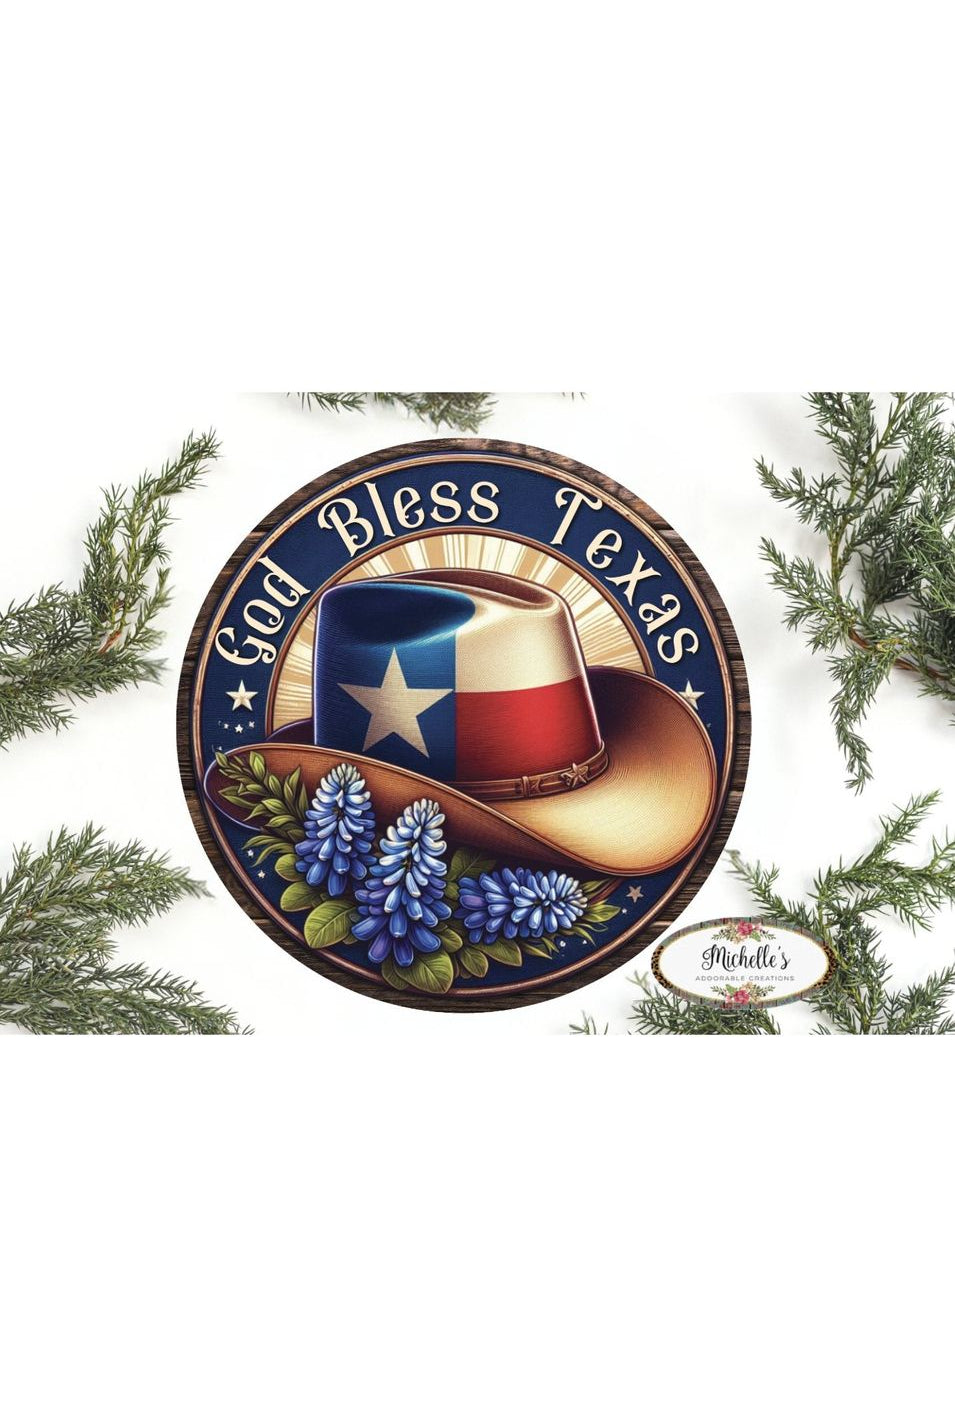 Shop For God Bless Texas Bluebonnet Cowboy Hat Sign